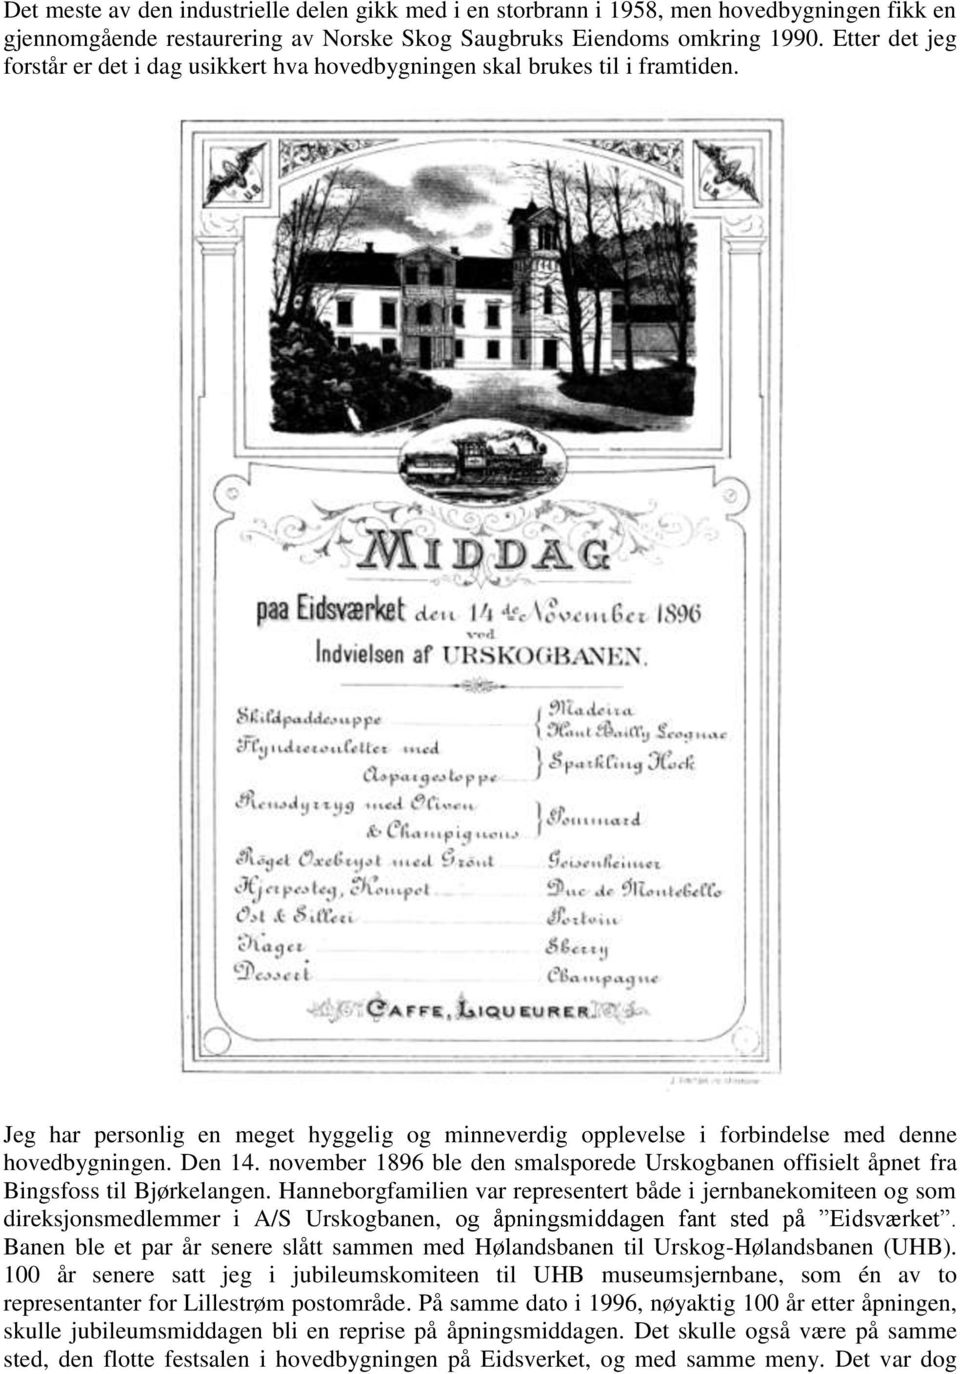 Den 14. november 1896 ble den smalsporede Urskogbanen offisielt åpnet fra Bingsfoss til Bjørkelangen.